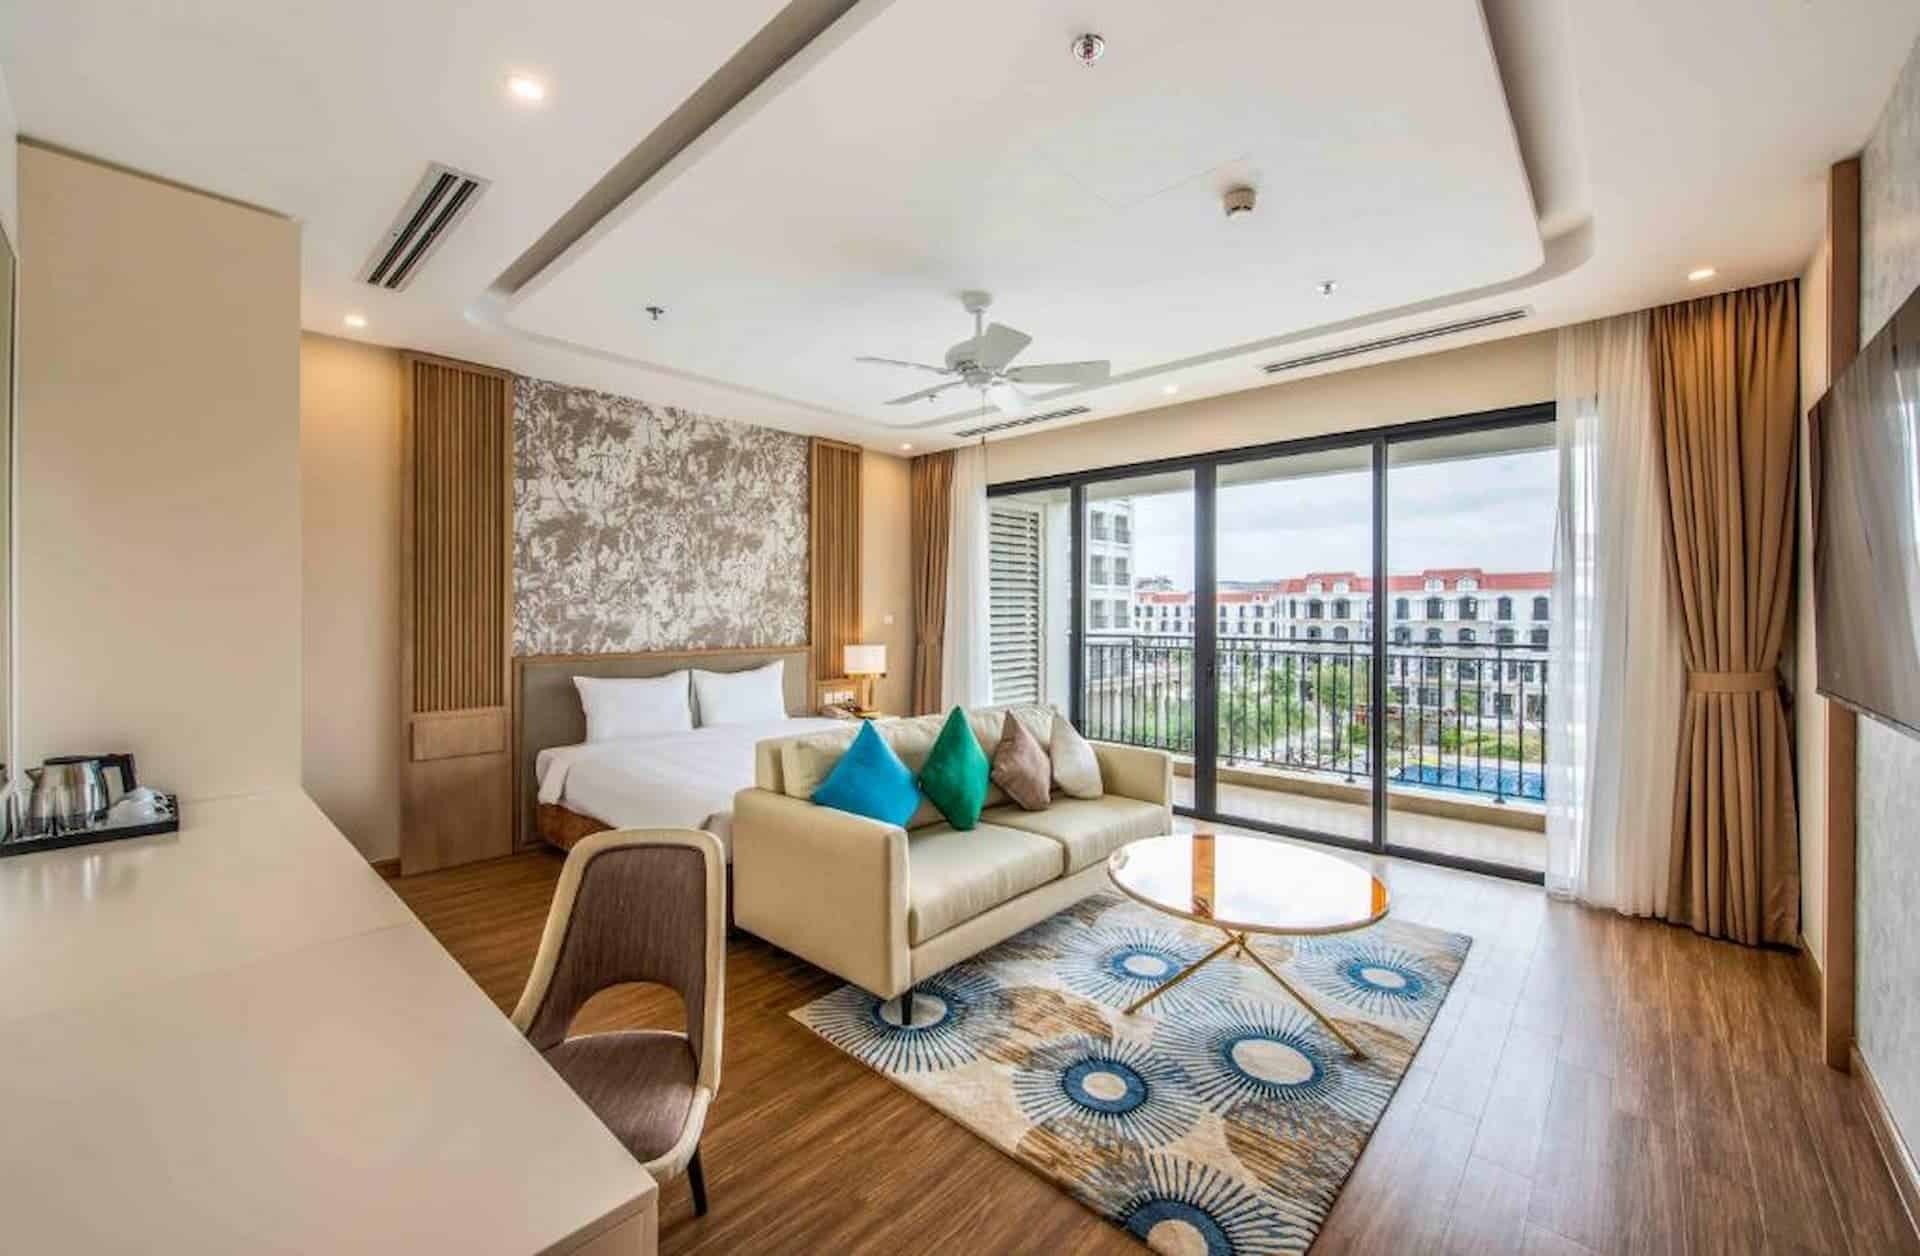   Căn hộ 2 phòng ngủ tại Ocean Villas Đà Nẵng